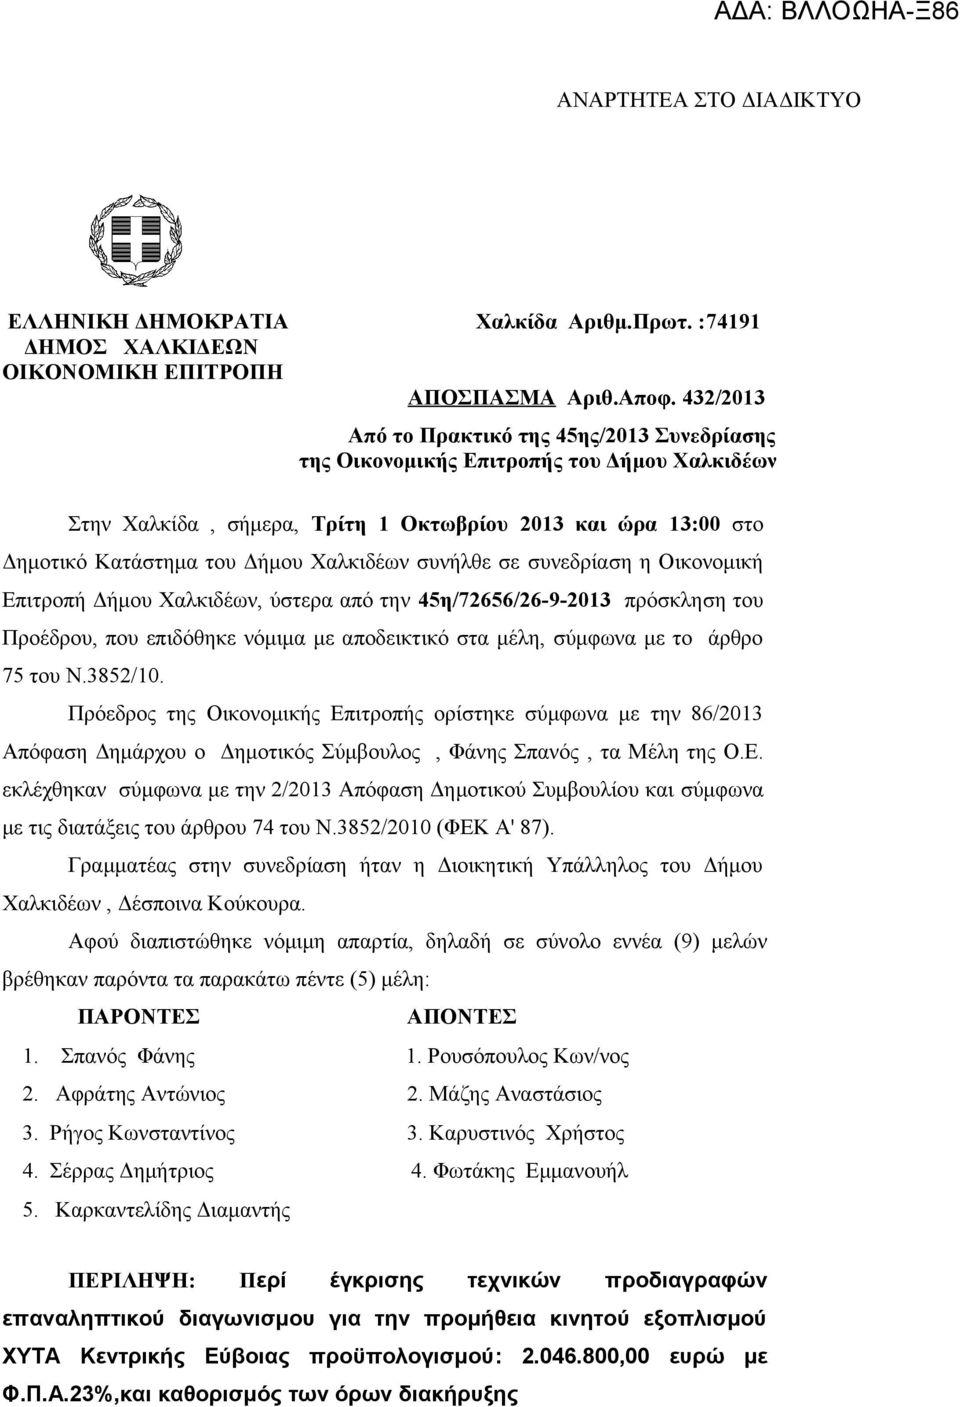 συνήλθε σε συνεδρίαση η Οικονομική Επιτροπή Δήμου Χαλκιδέων, ύστερα από την 45η/72656/26-9-2013 πρόσκληση του Προέδρου, που επιδόθηκε νόμιμα με αποδεικτικό στα μέλη, σύμφωνα με το άρθρο 75 του Ν.